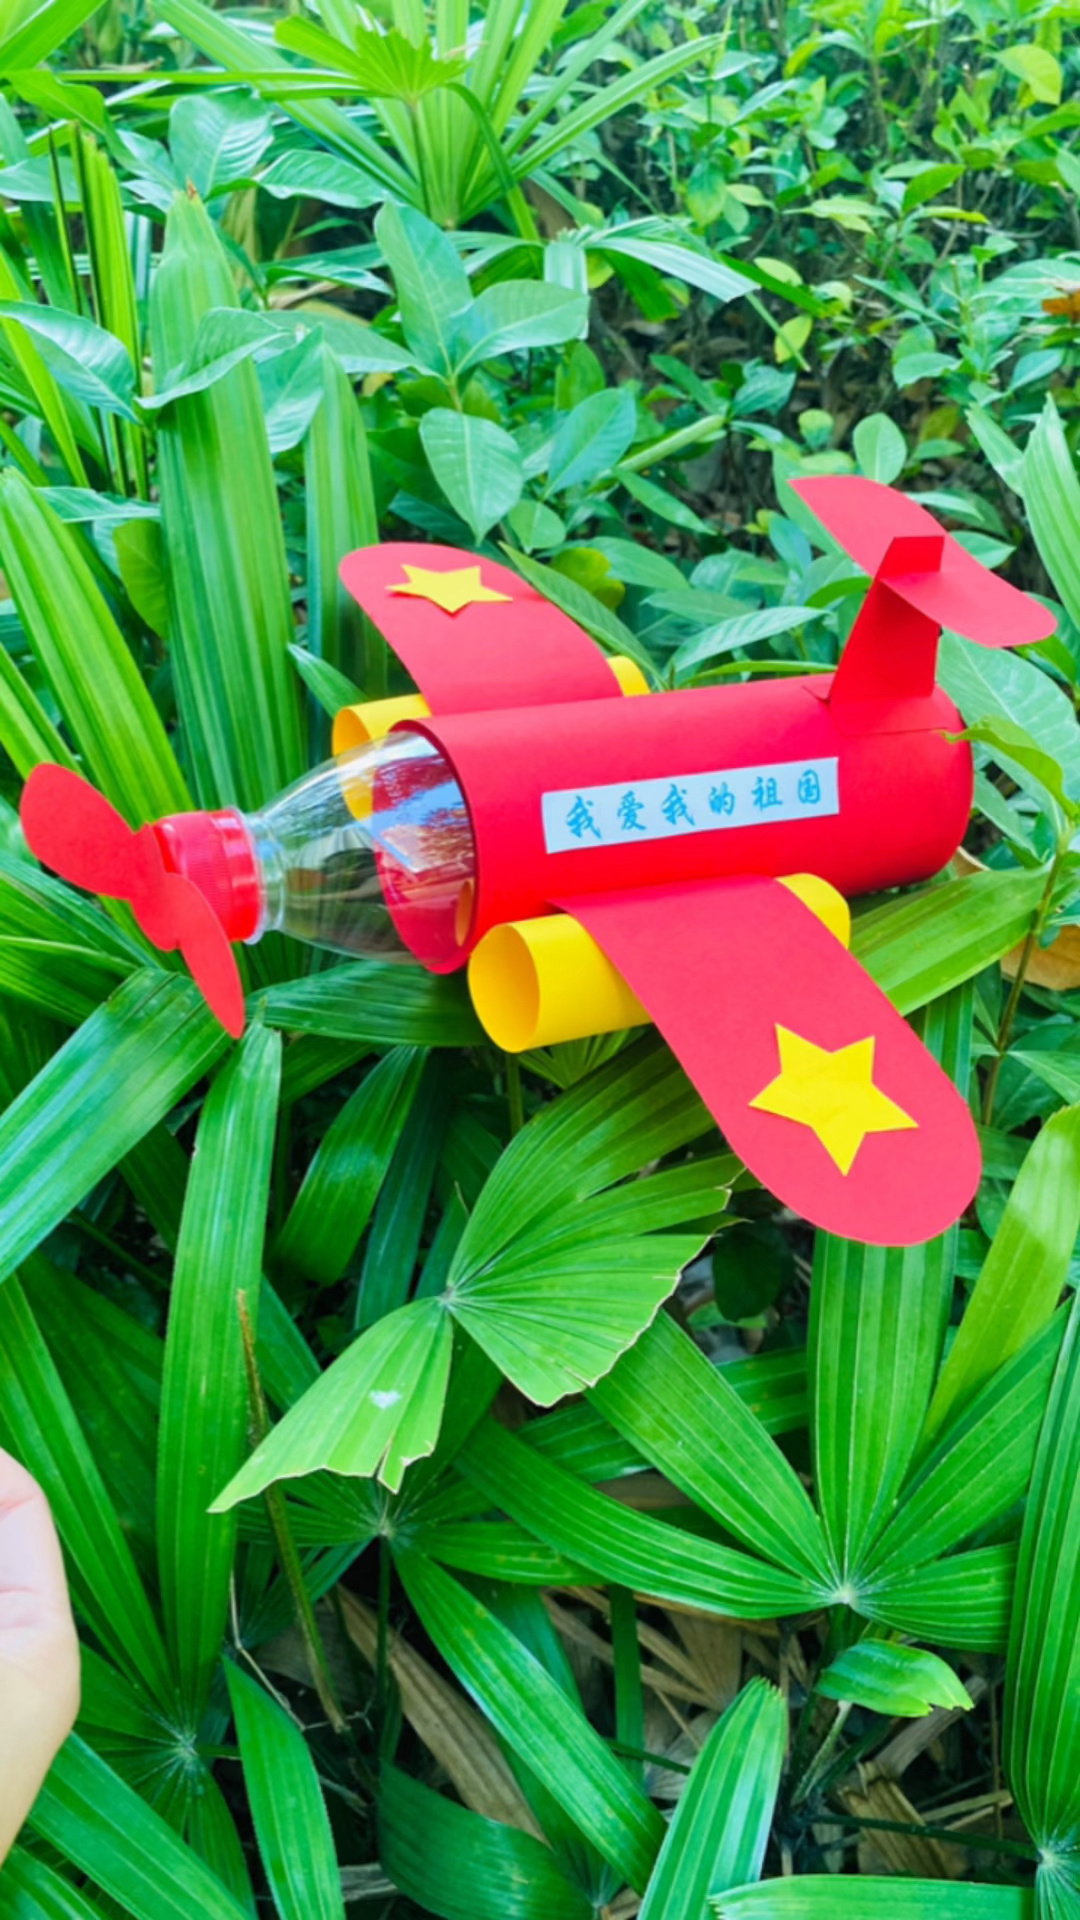 用矿泉水瓶制作一架飞机给孩子当玩具玩